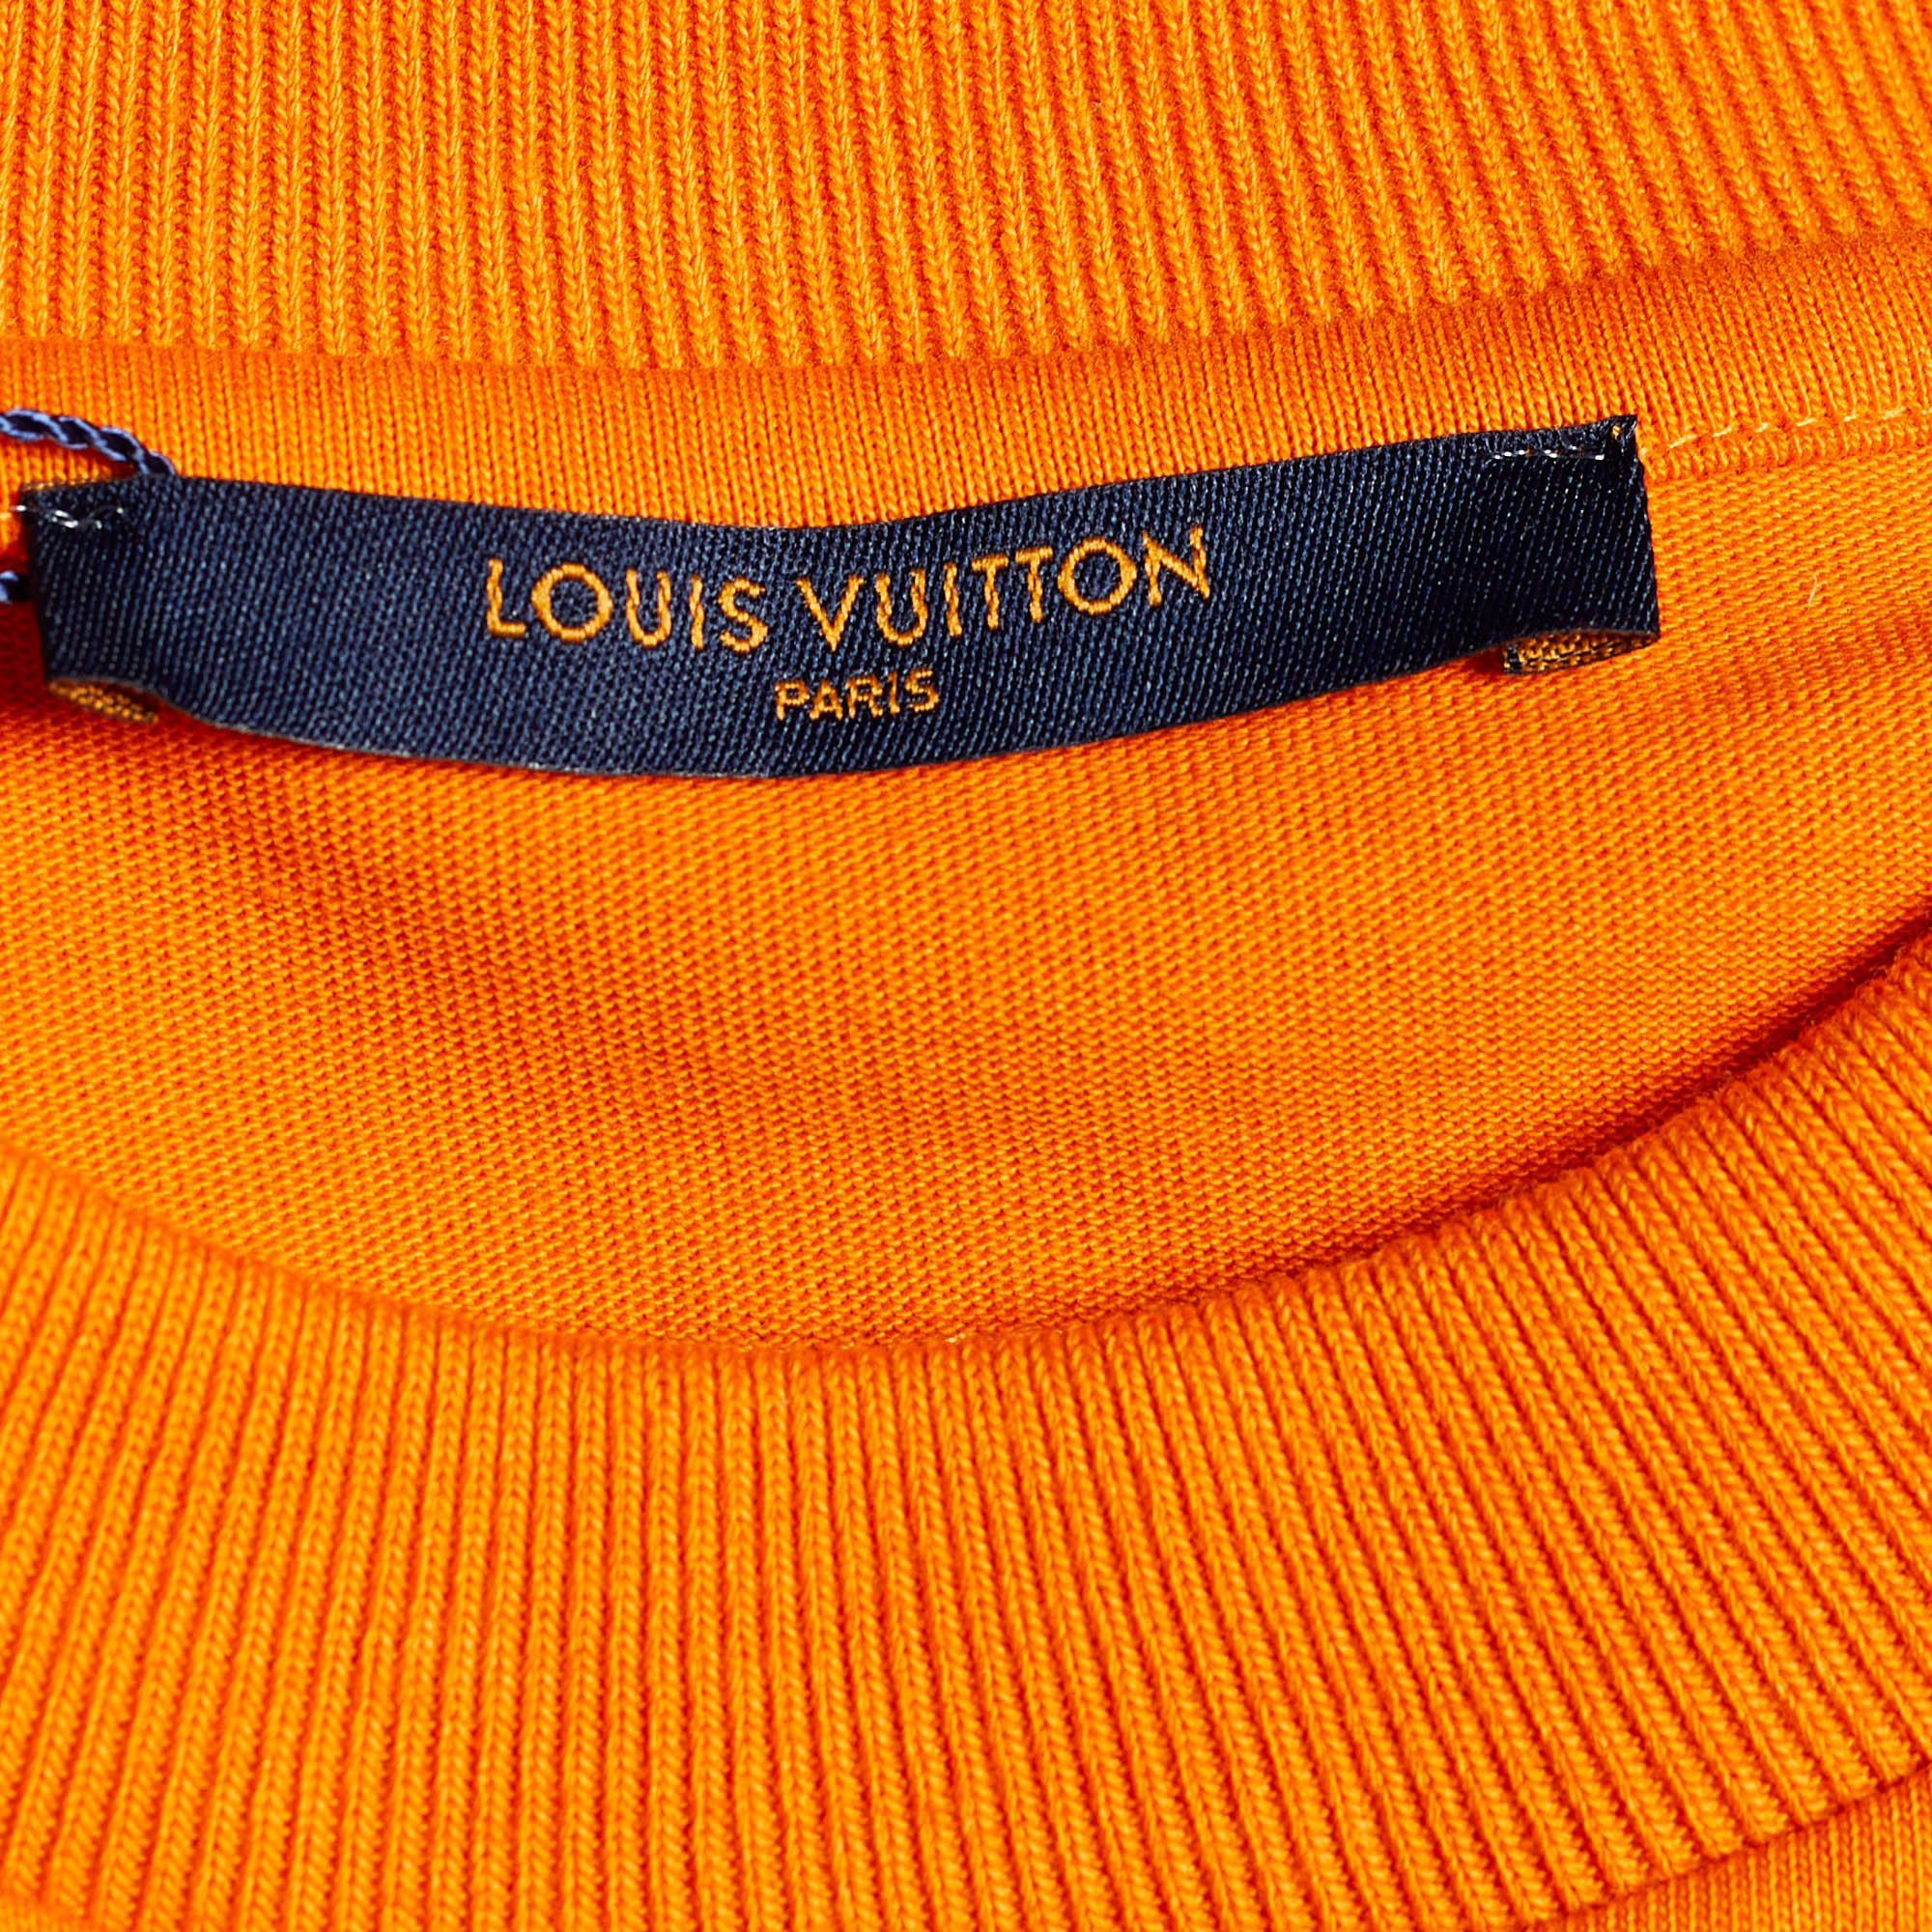 Louis Vuitton 2019 Inside Out 3D Pocket T-Shirt - Orange T-Shirts